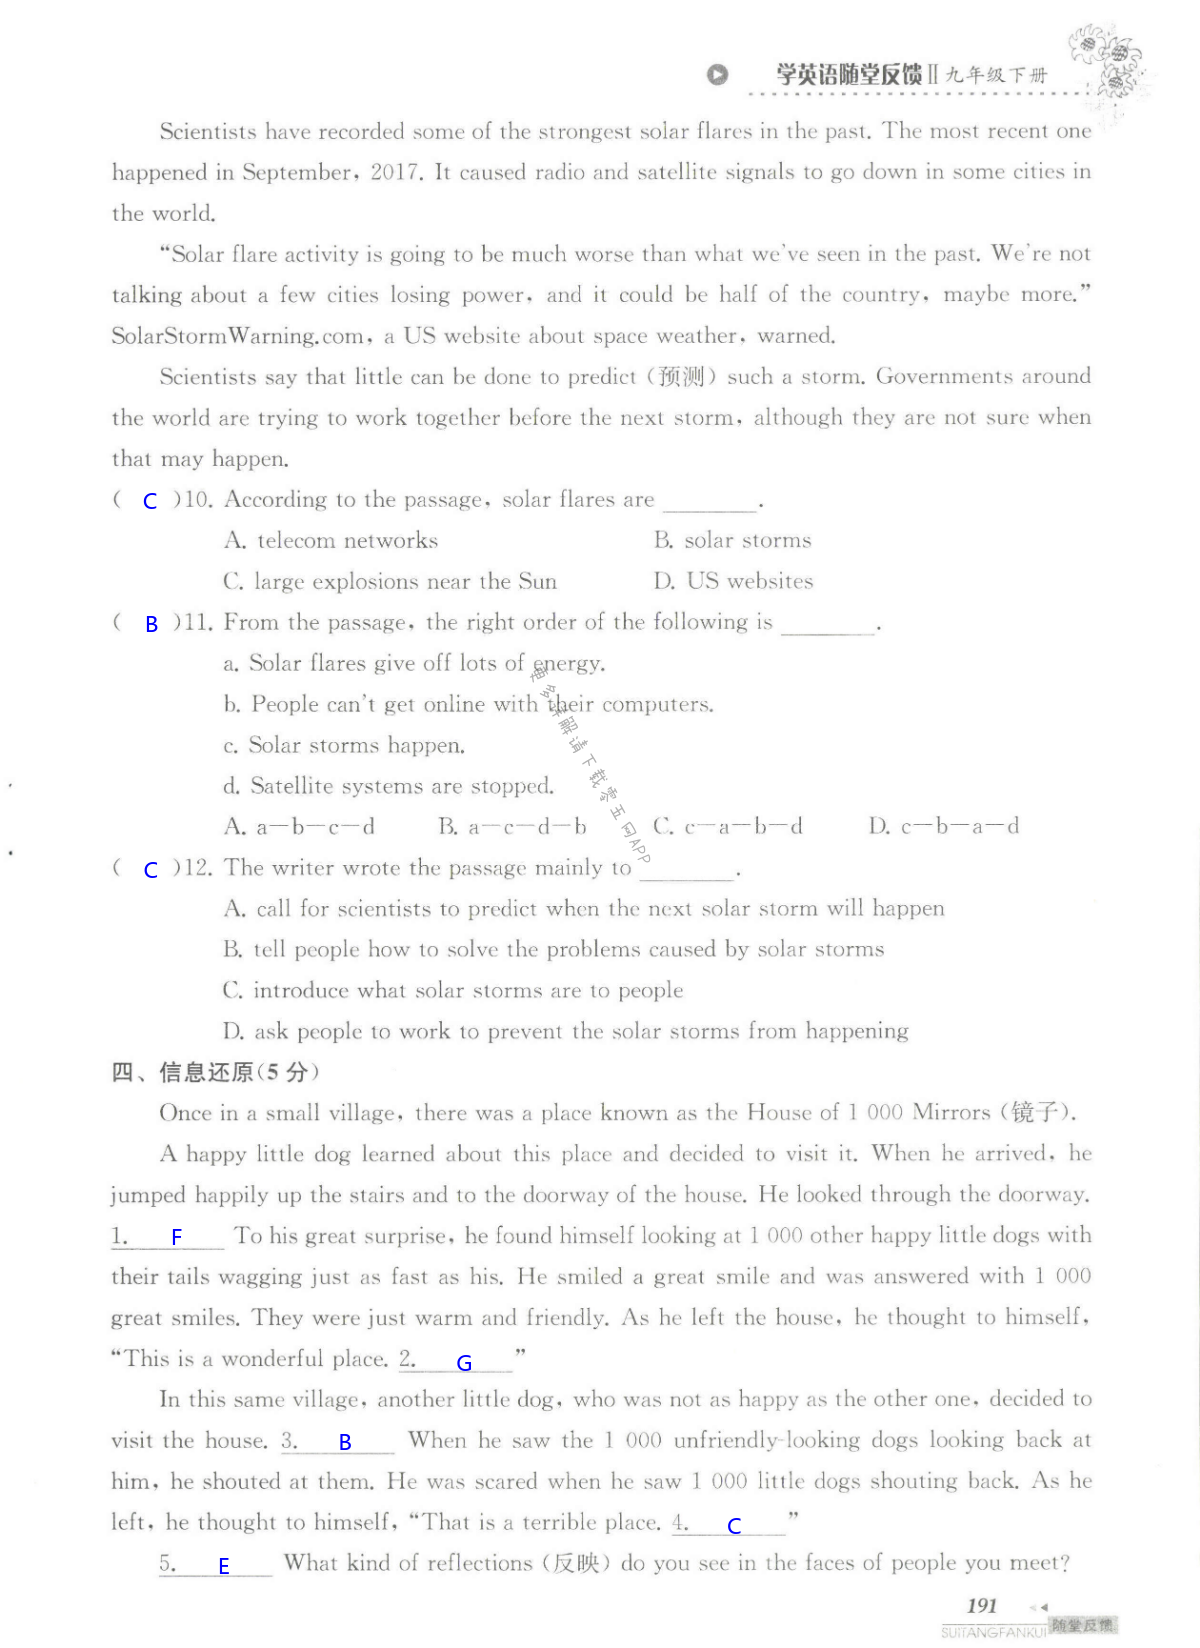 单元综合测试 Test for Unit 4 of 9B - 第191页